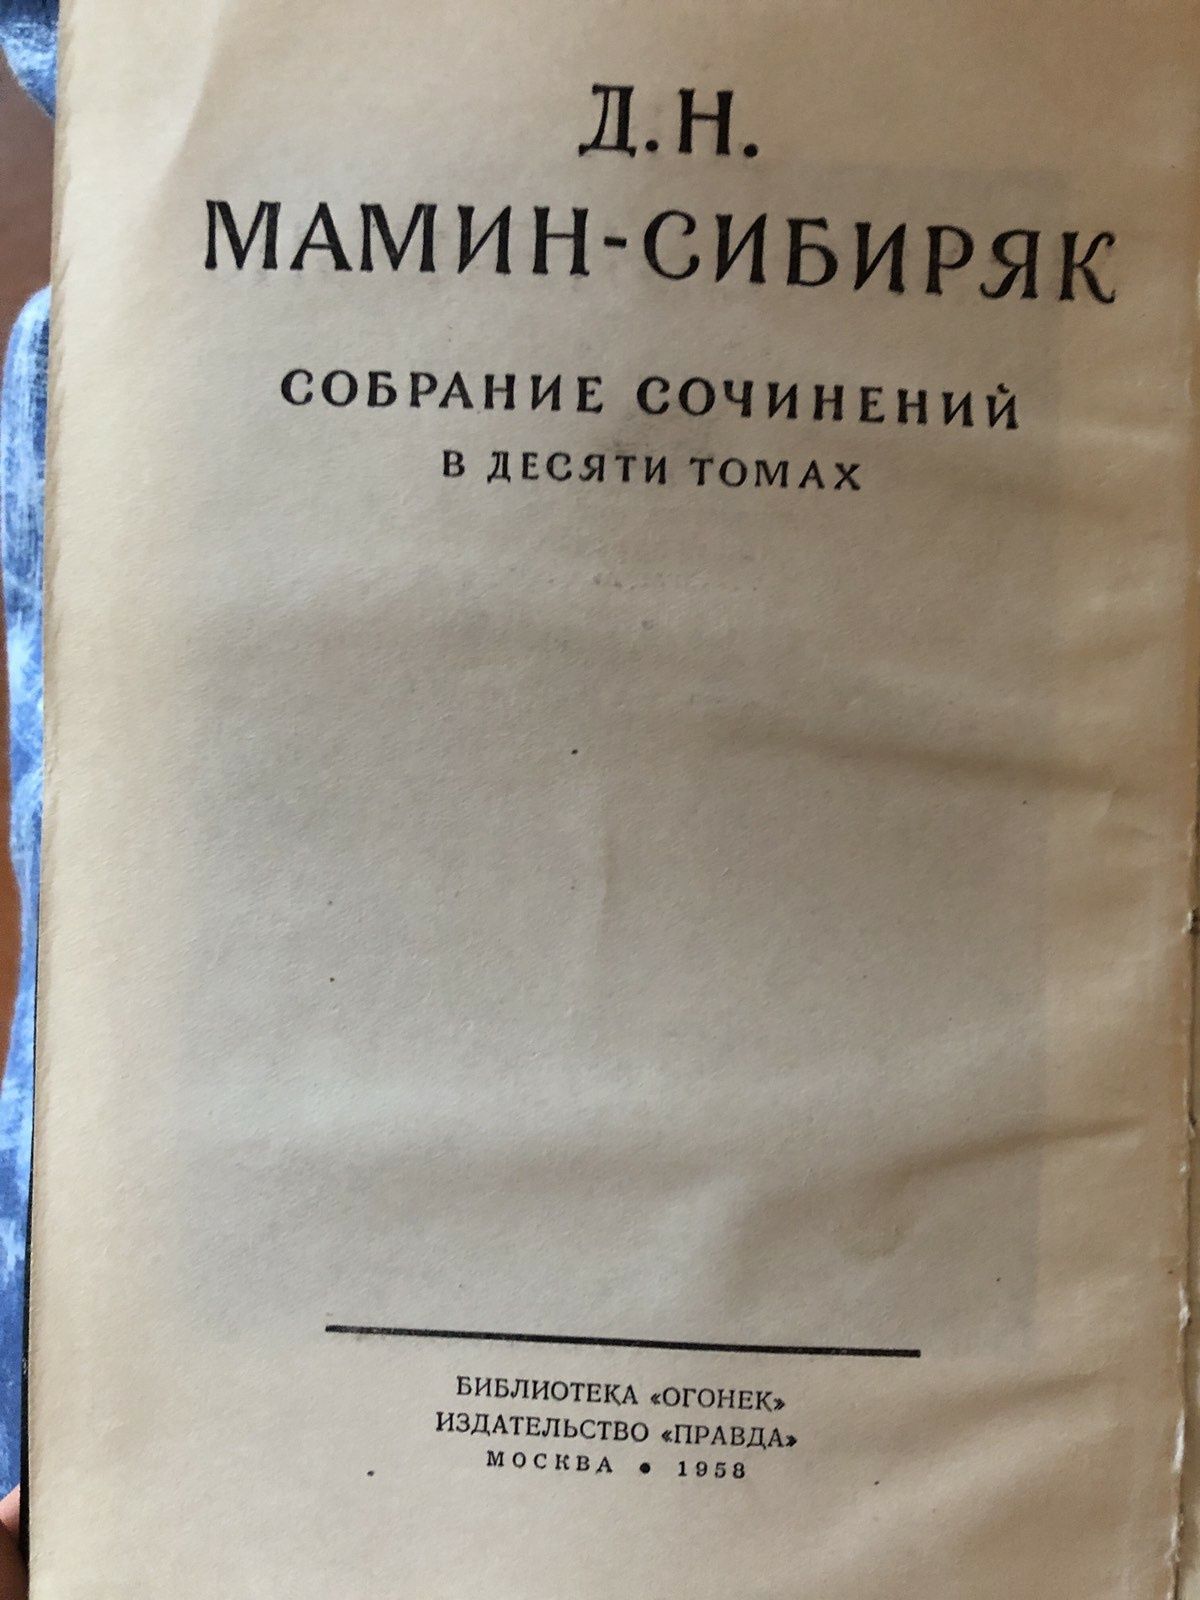 Мамин - Сибиряк в 10 томах